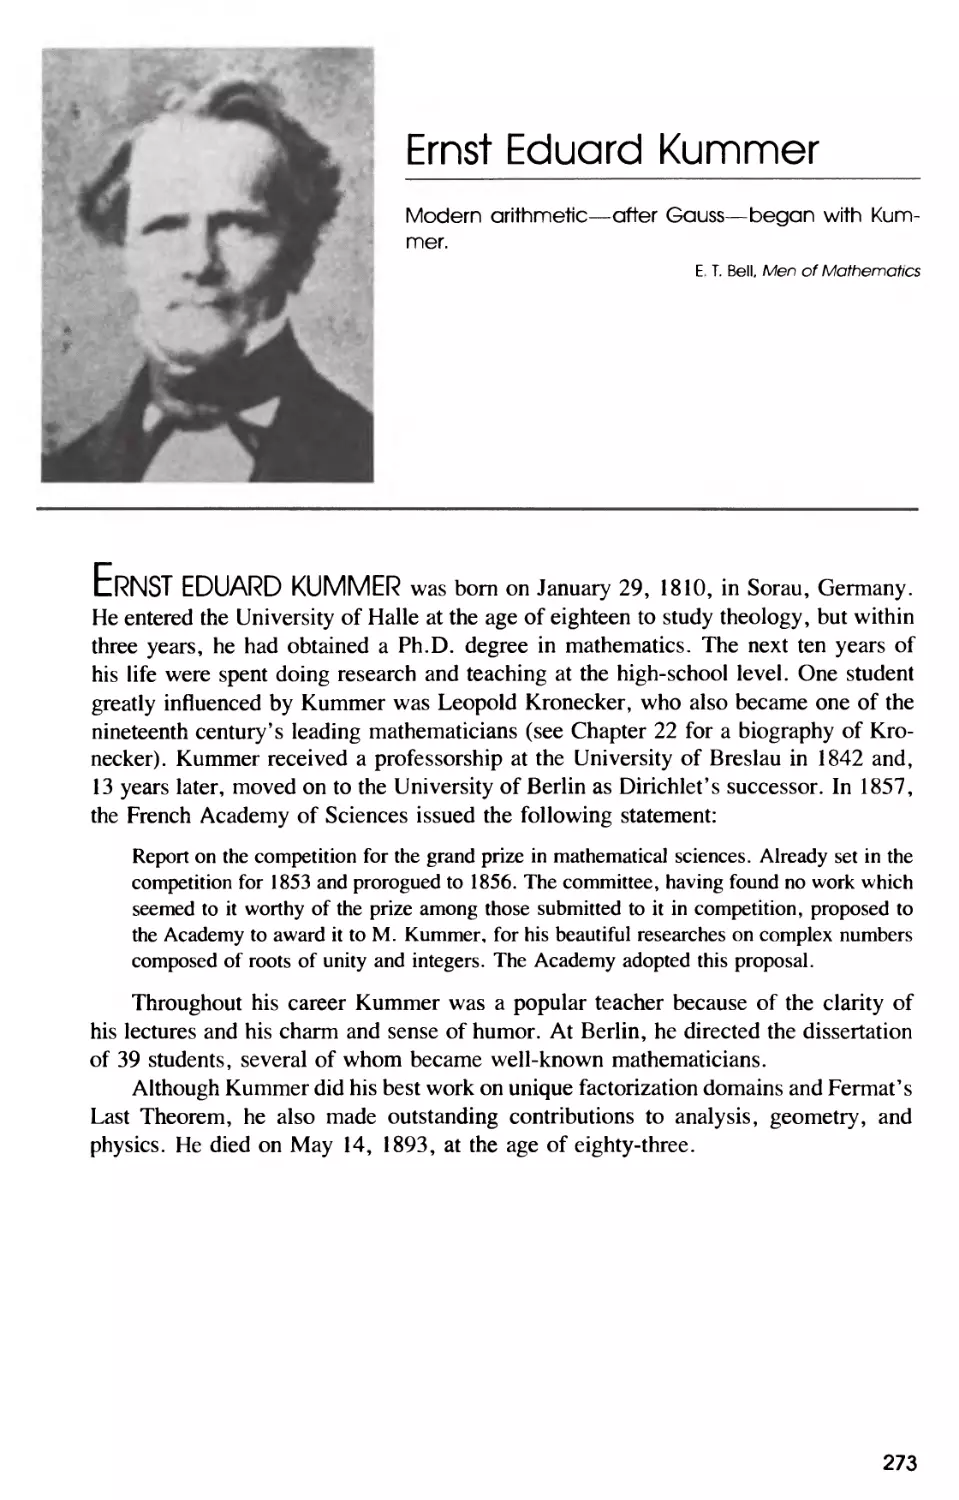 Biography of Ernst Eduard Kummer